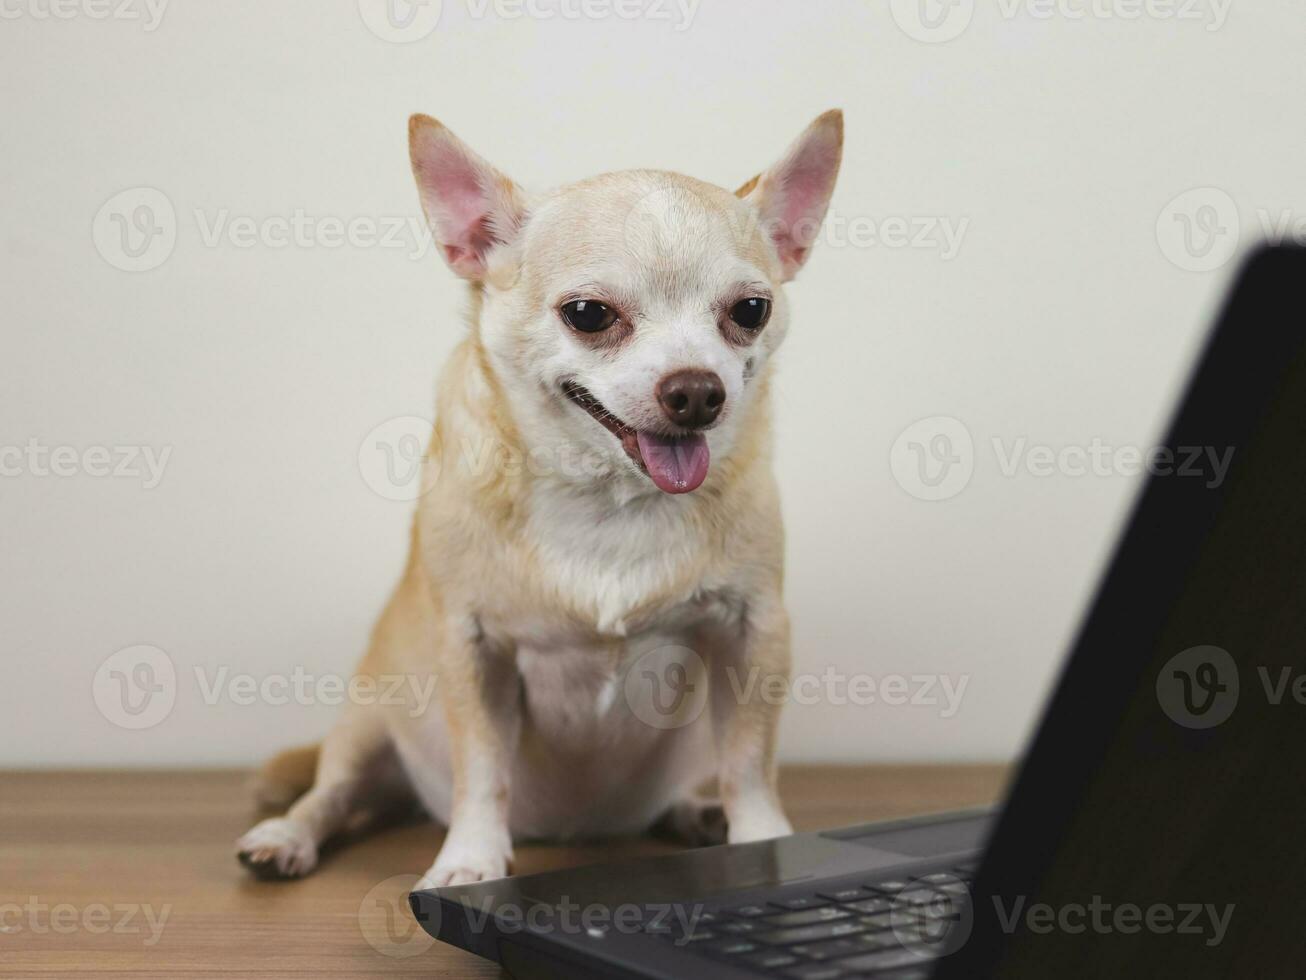 marrón corto pelo chihuahua perro sentado en de madera piso con computadora computadora portátil, sonriente y hablando en vídeo llamar. mascota utilizando un computadora. foto